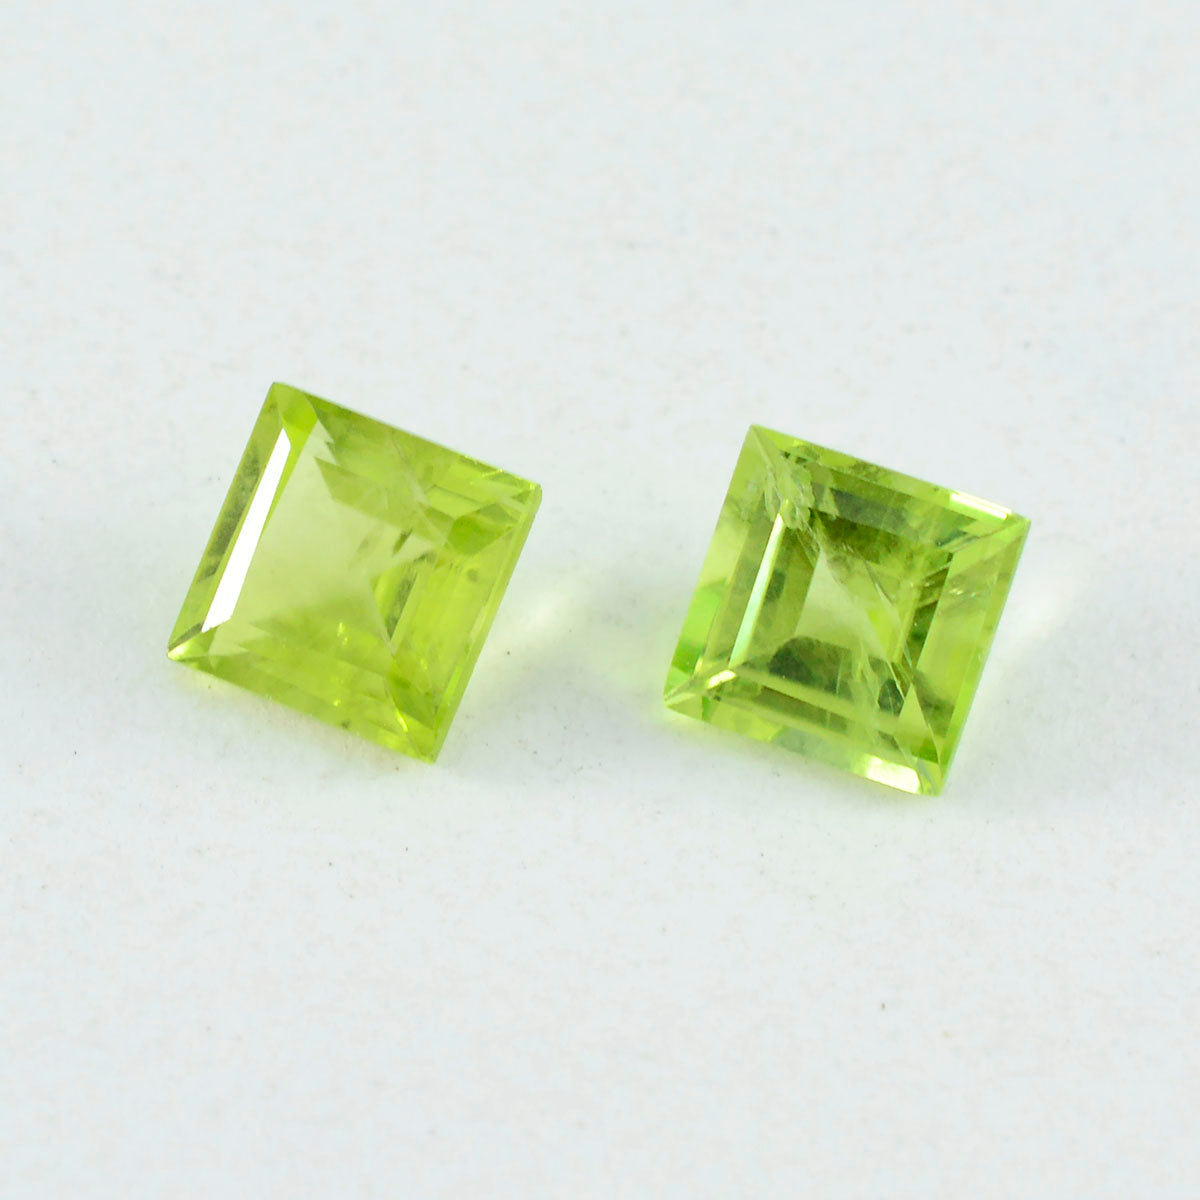 Riyogems 1 pièce péridot vert naturel à facettes 10x10mm forme carrée belle qualité gemme en vrac